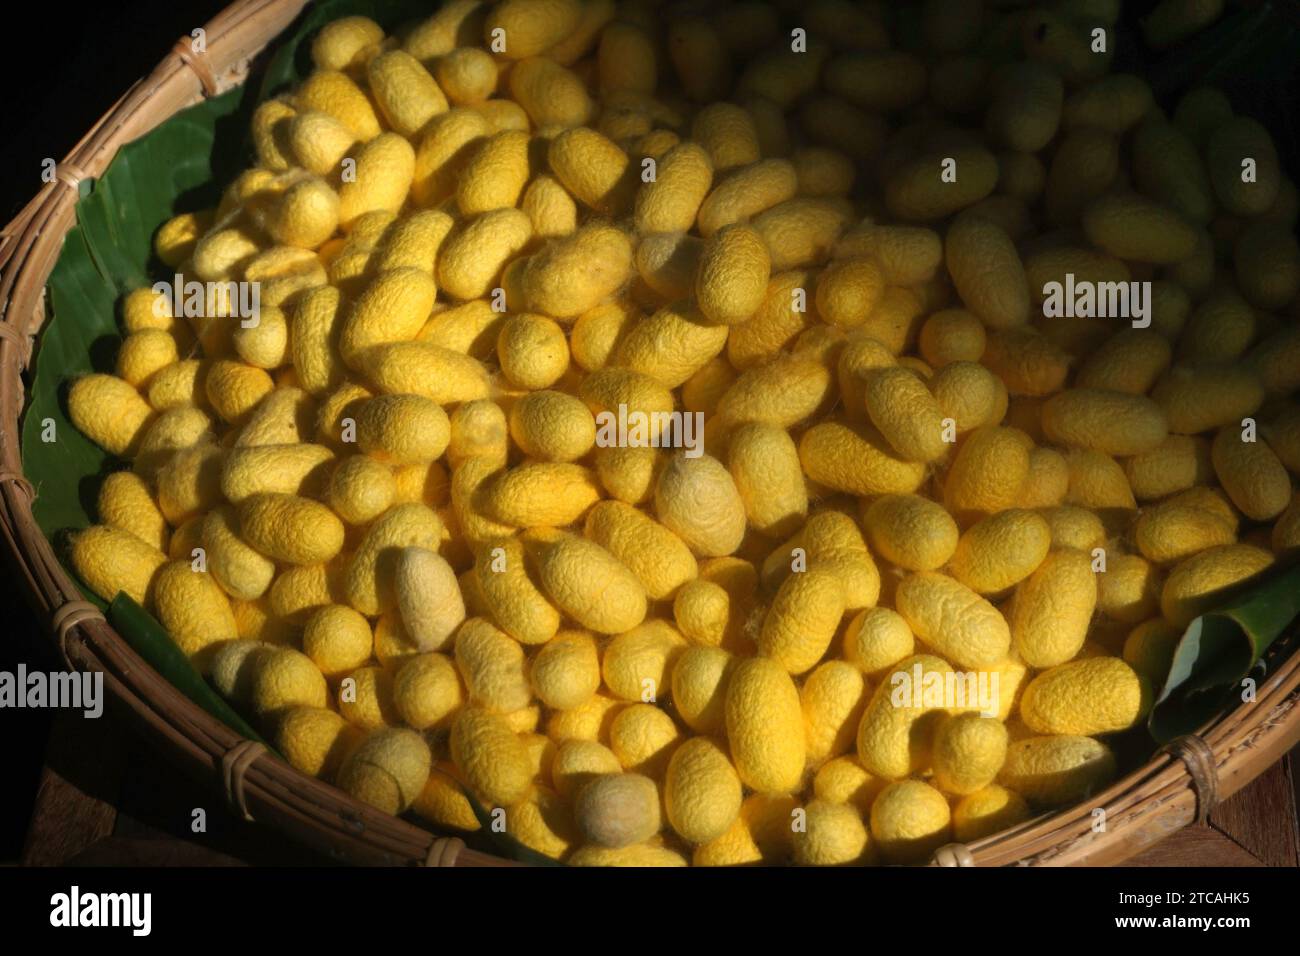 chrysalis yellow silkworm cocoons in bamboo basket Stock Photo